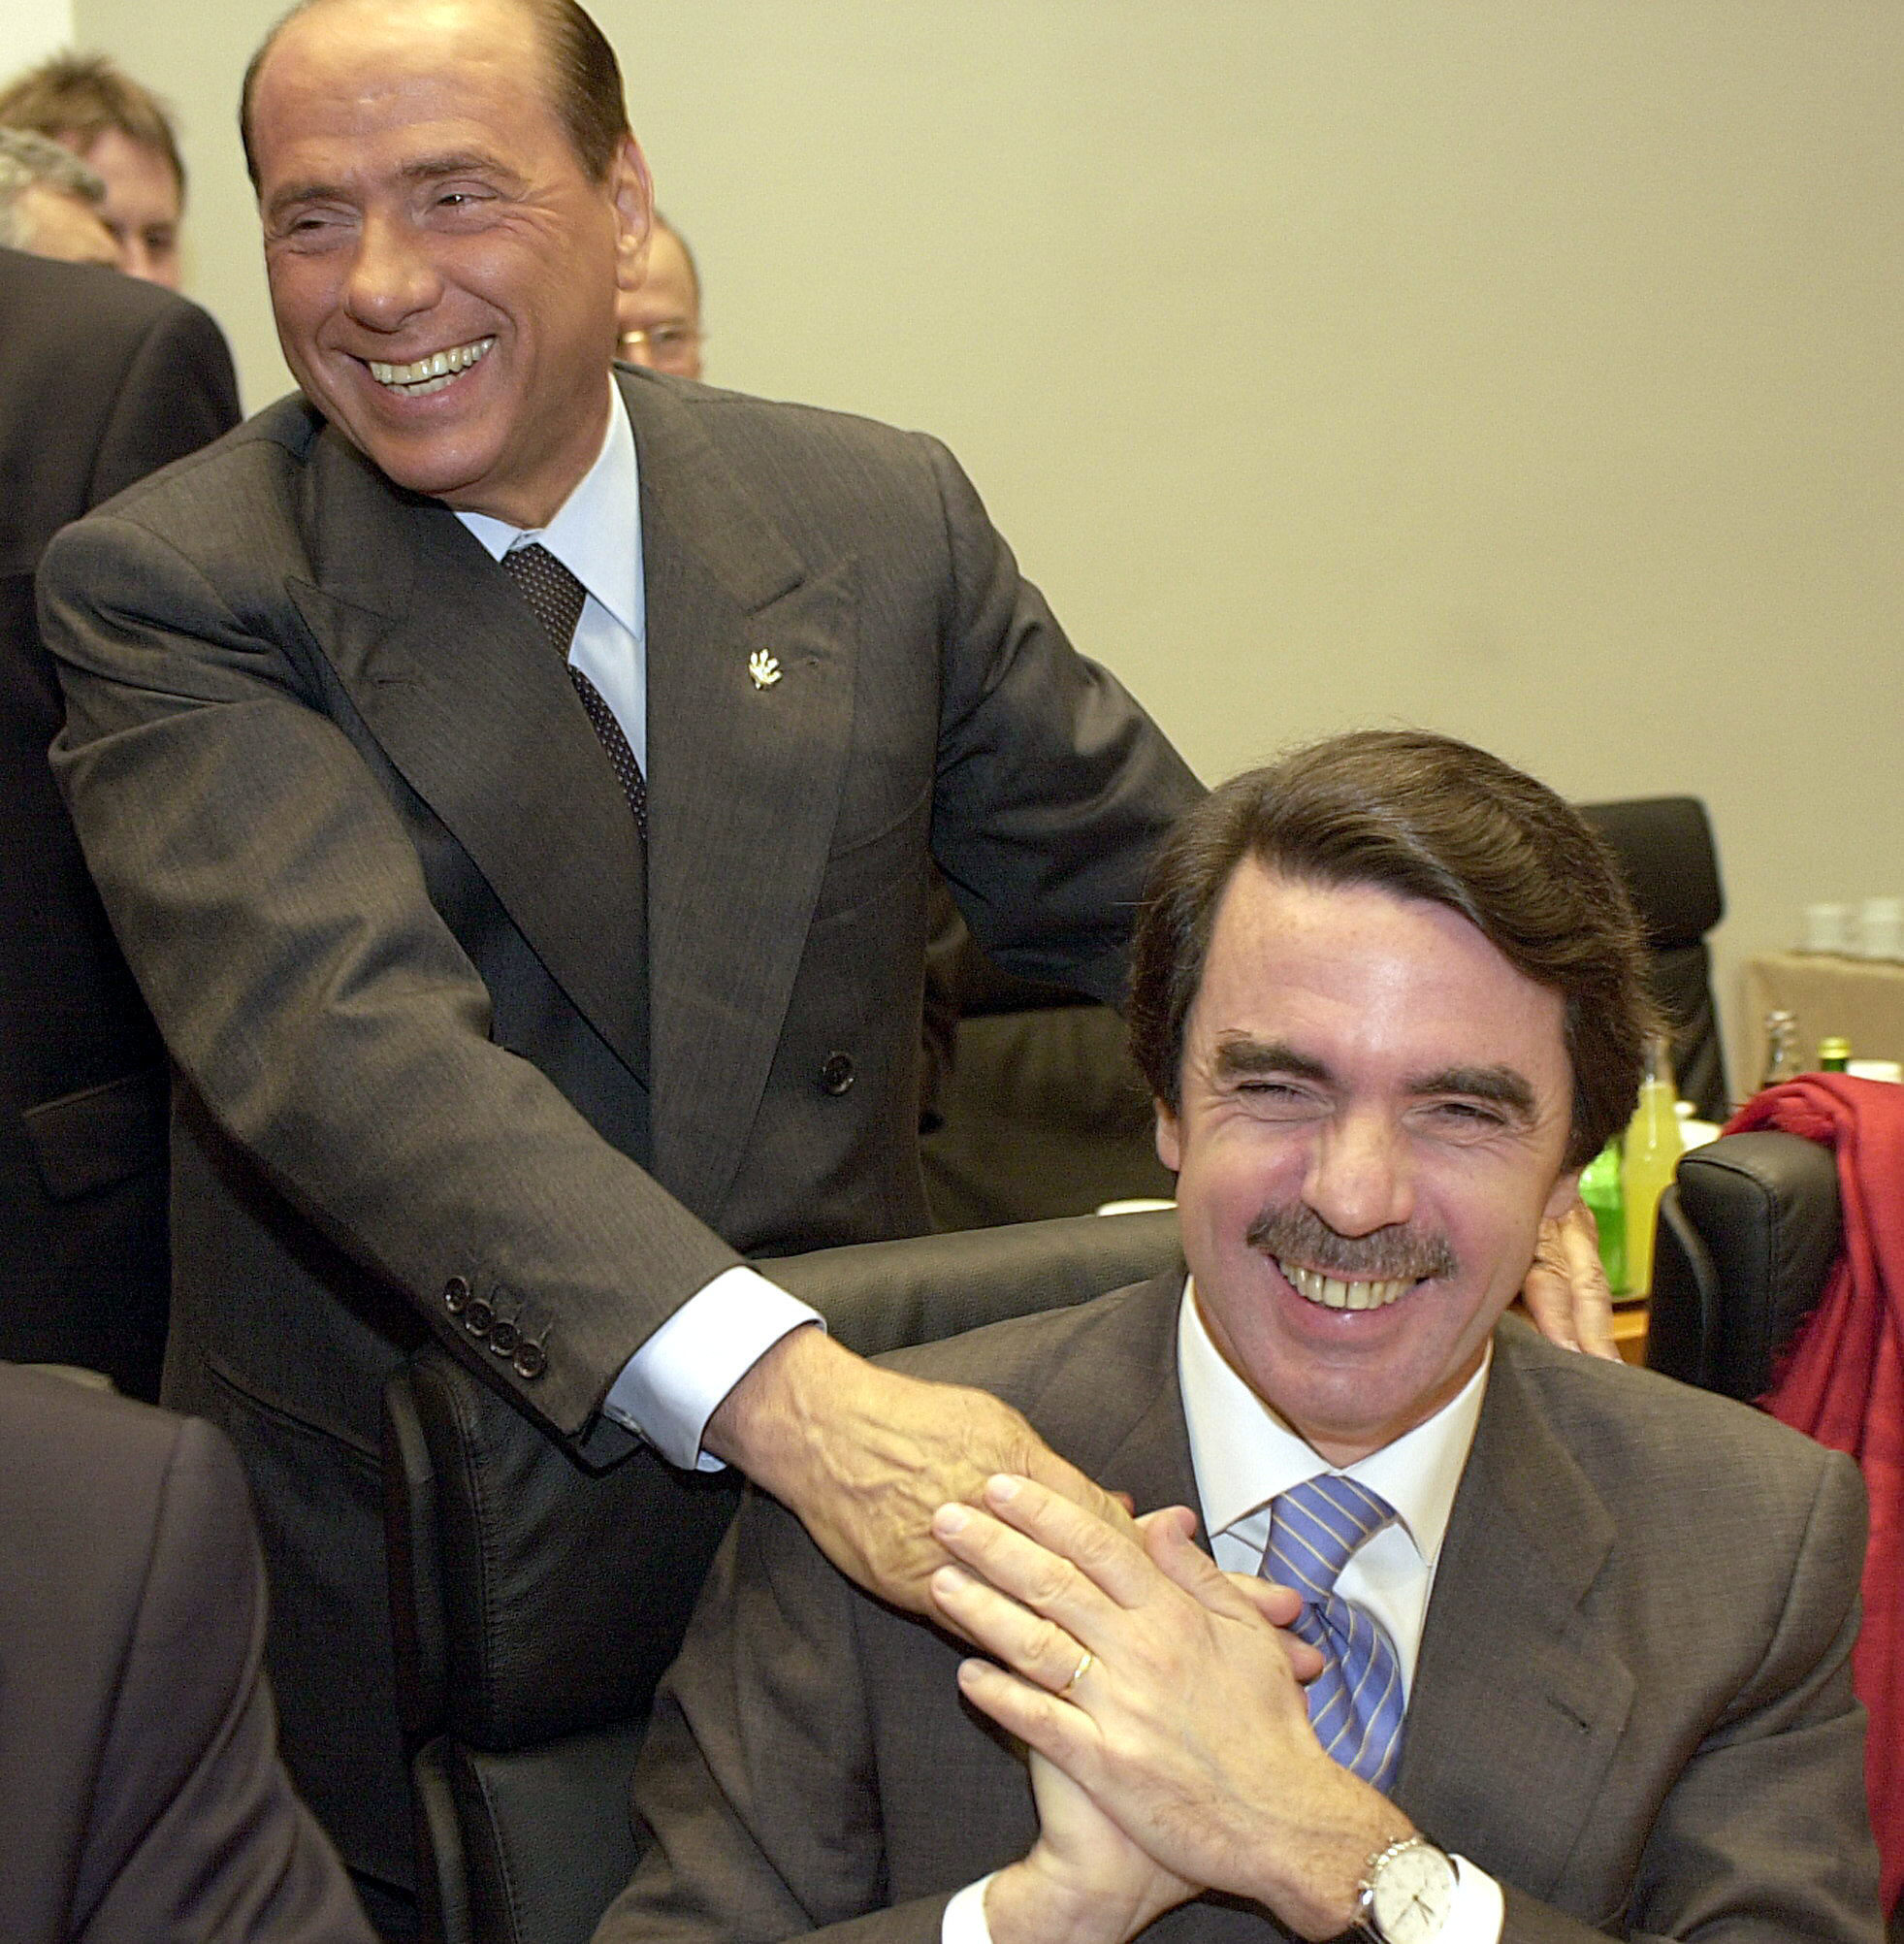 Mis recuerdos personales de Silvio Berlusconi